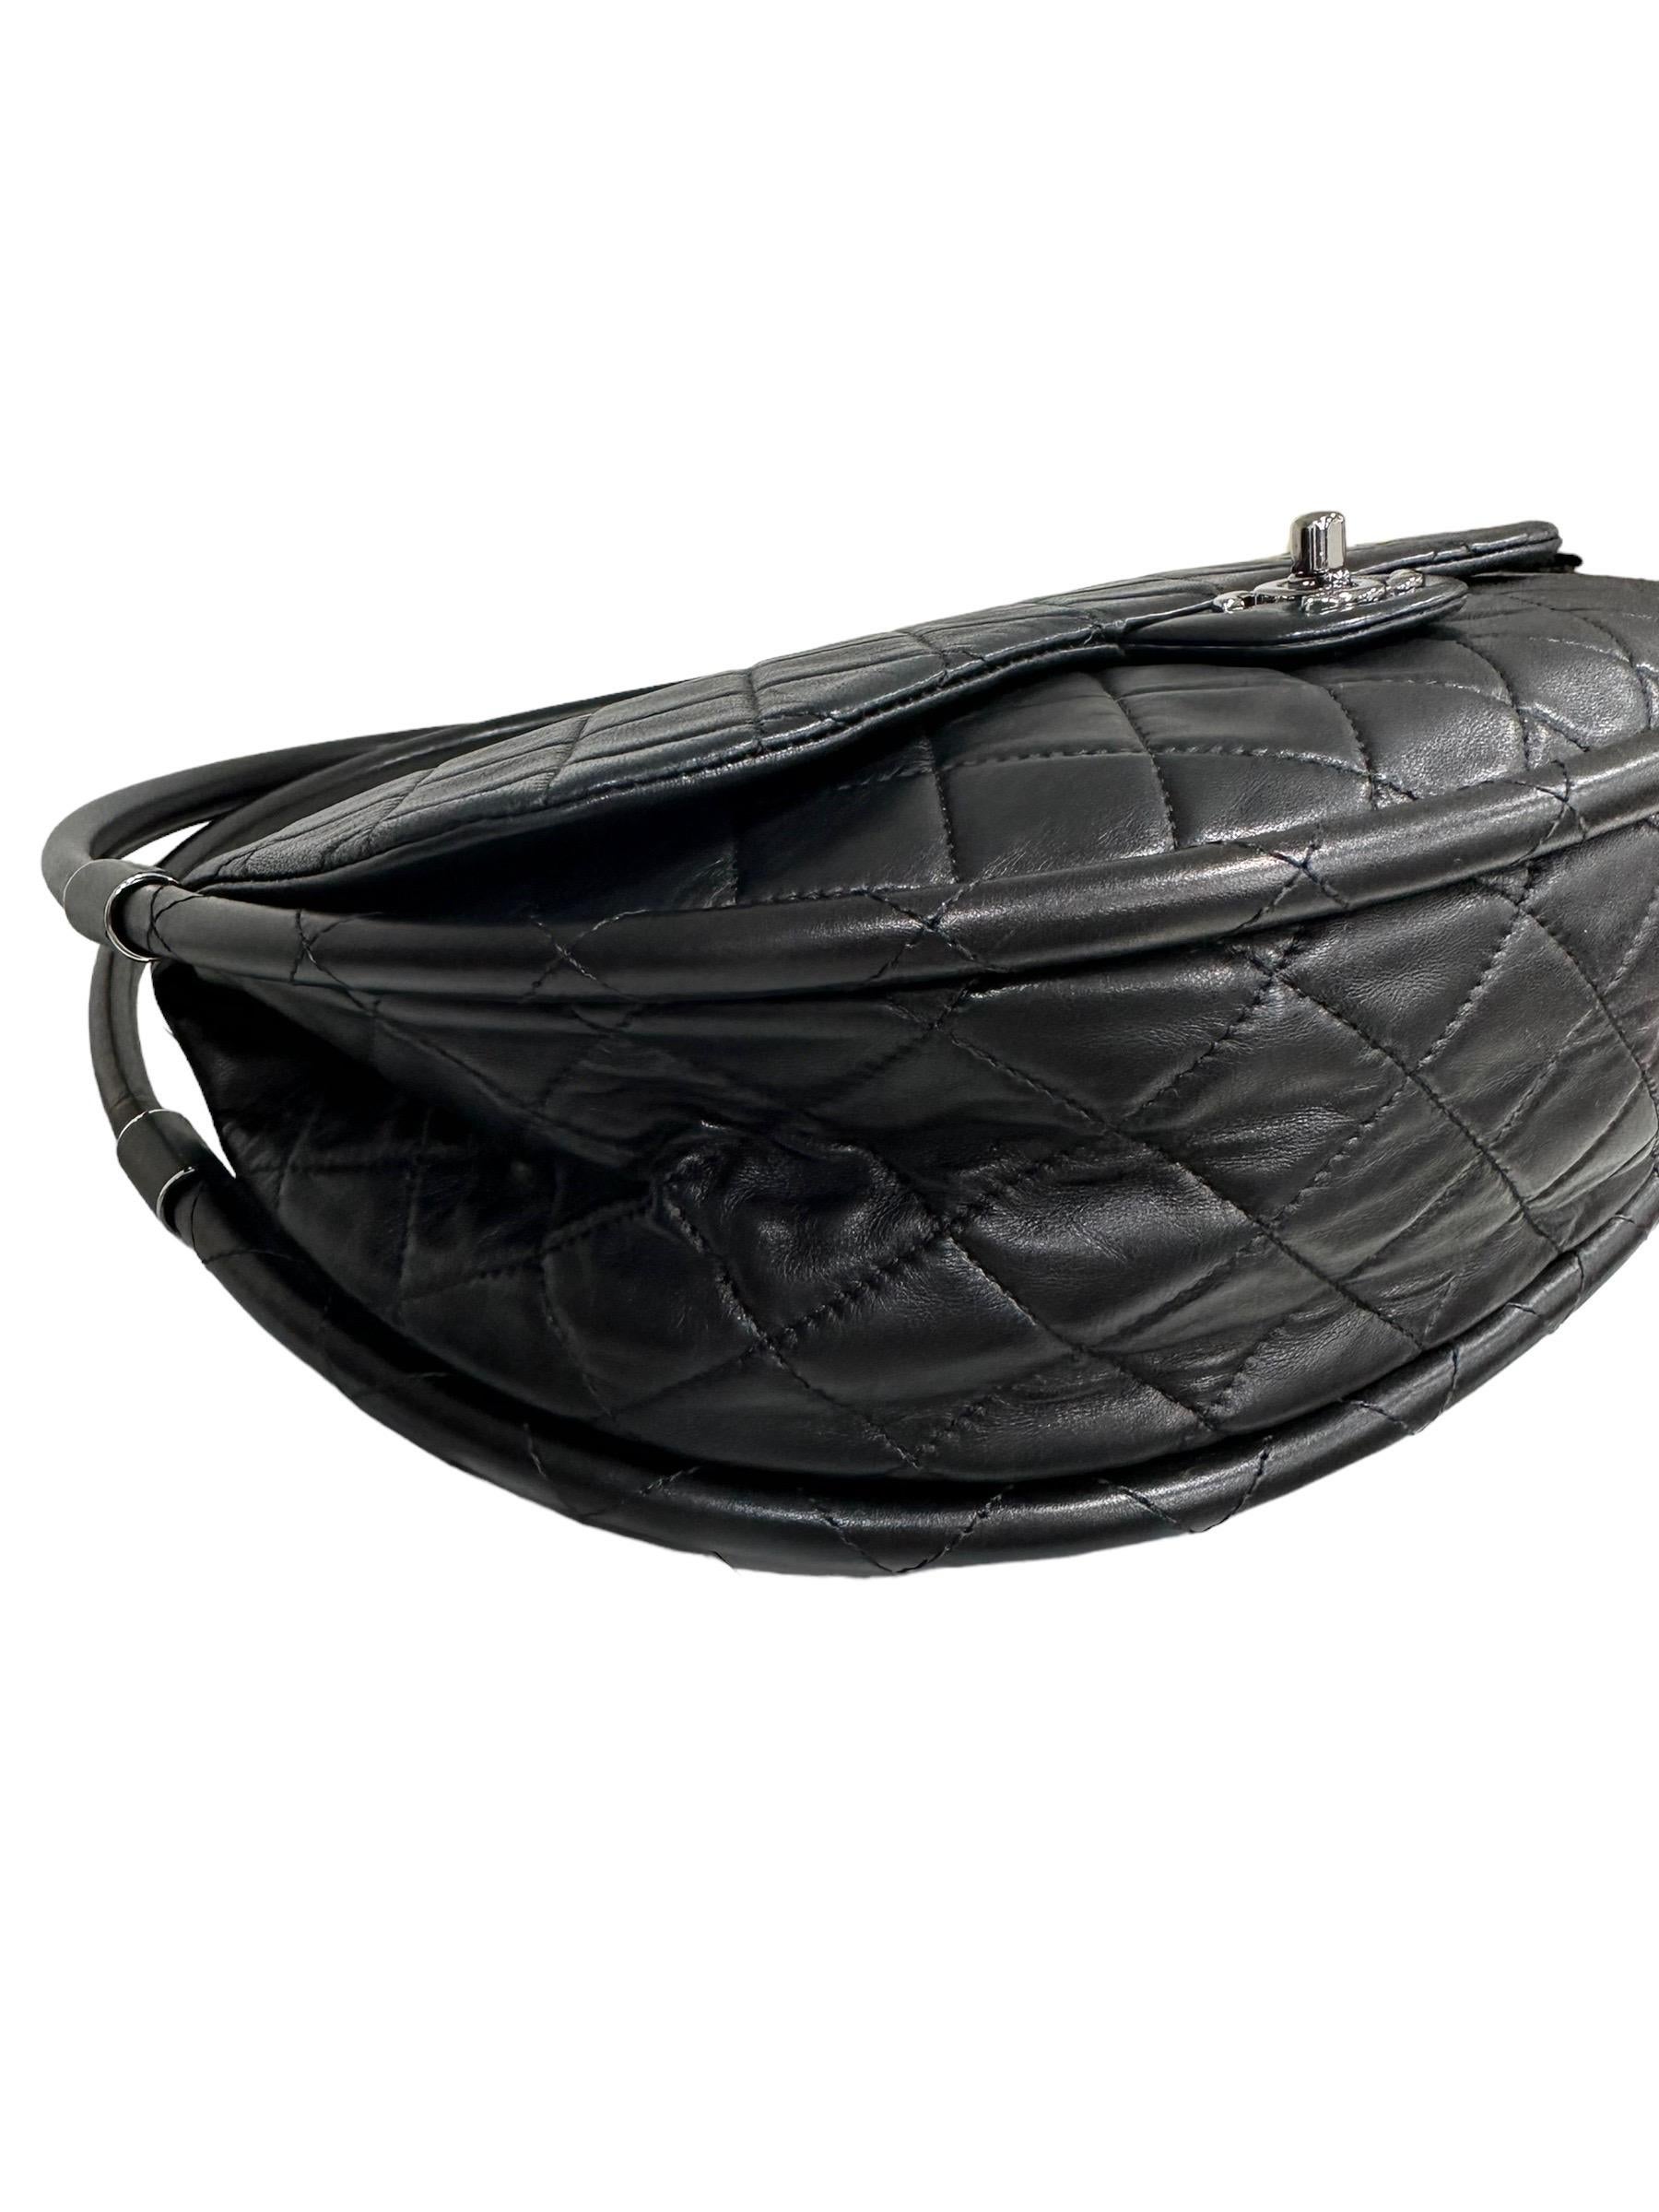 Women's Chanel Black Leather Hula Hoop Shoulder Bag For Sale